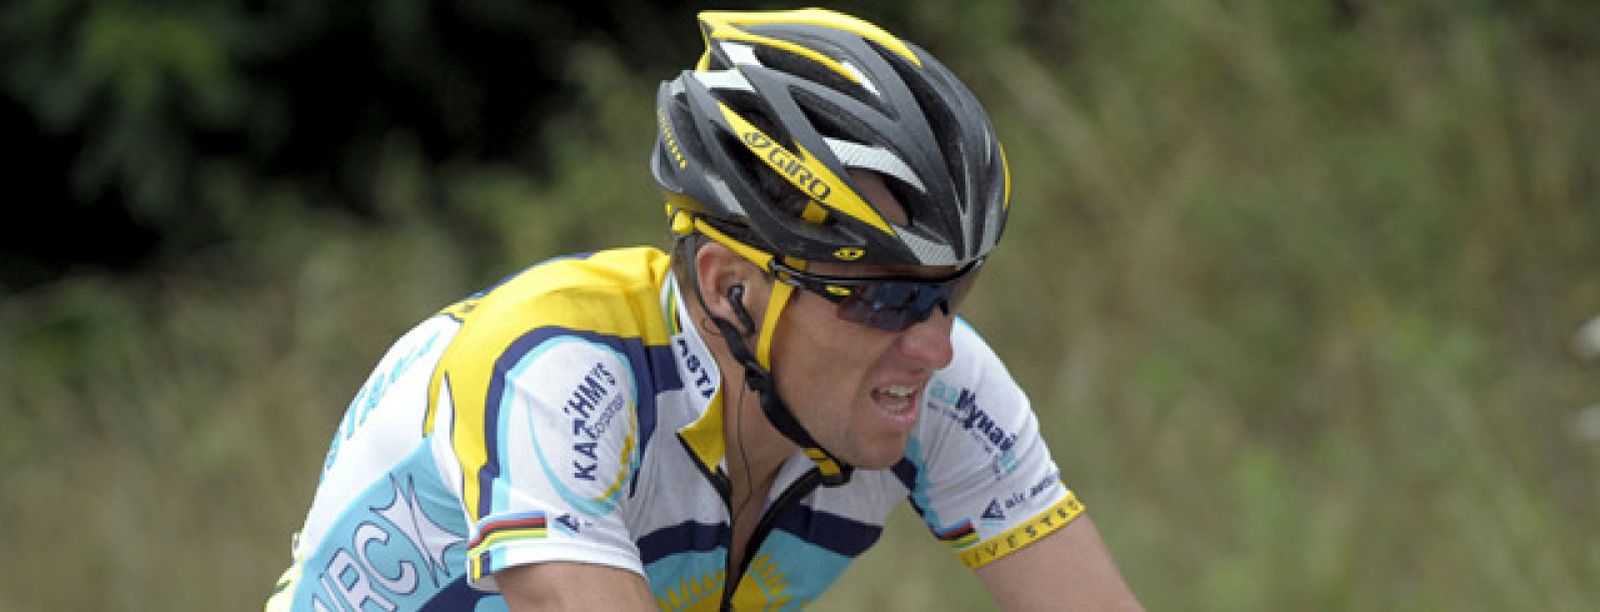 Foto: Lance Armstrong, nuevo líder del Tour de Francia